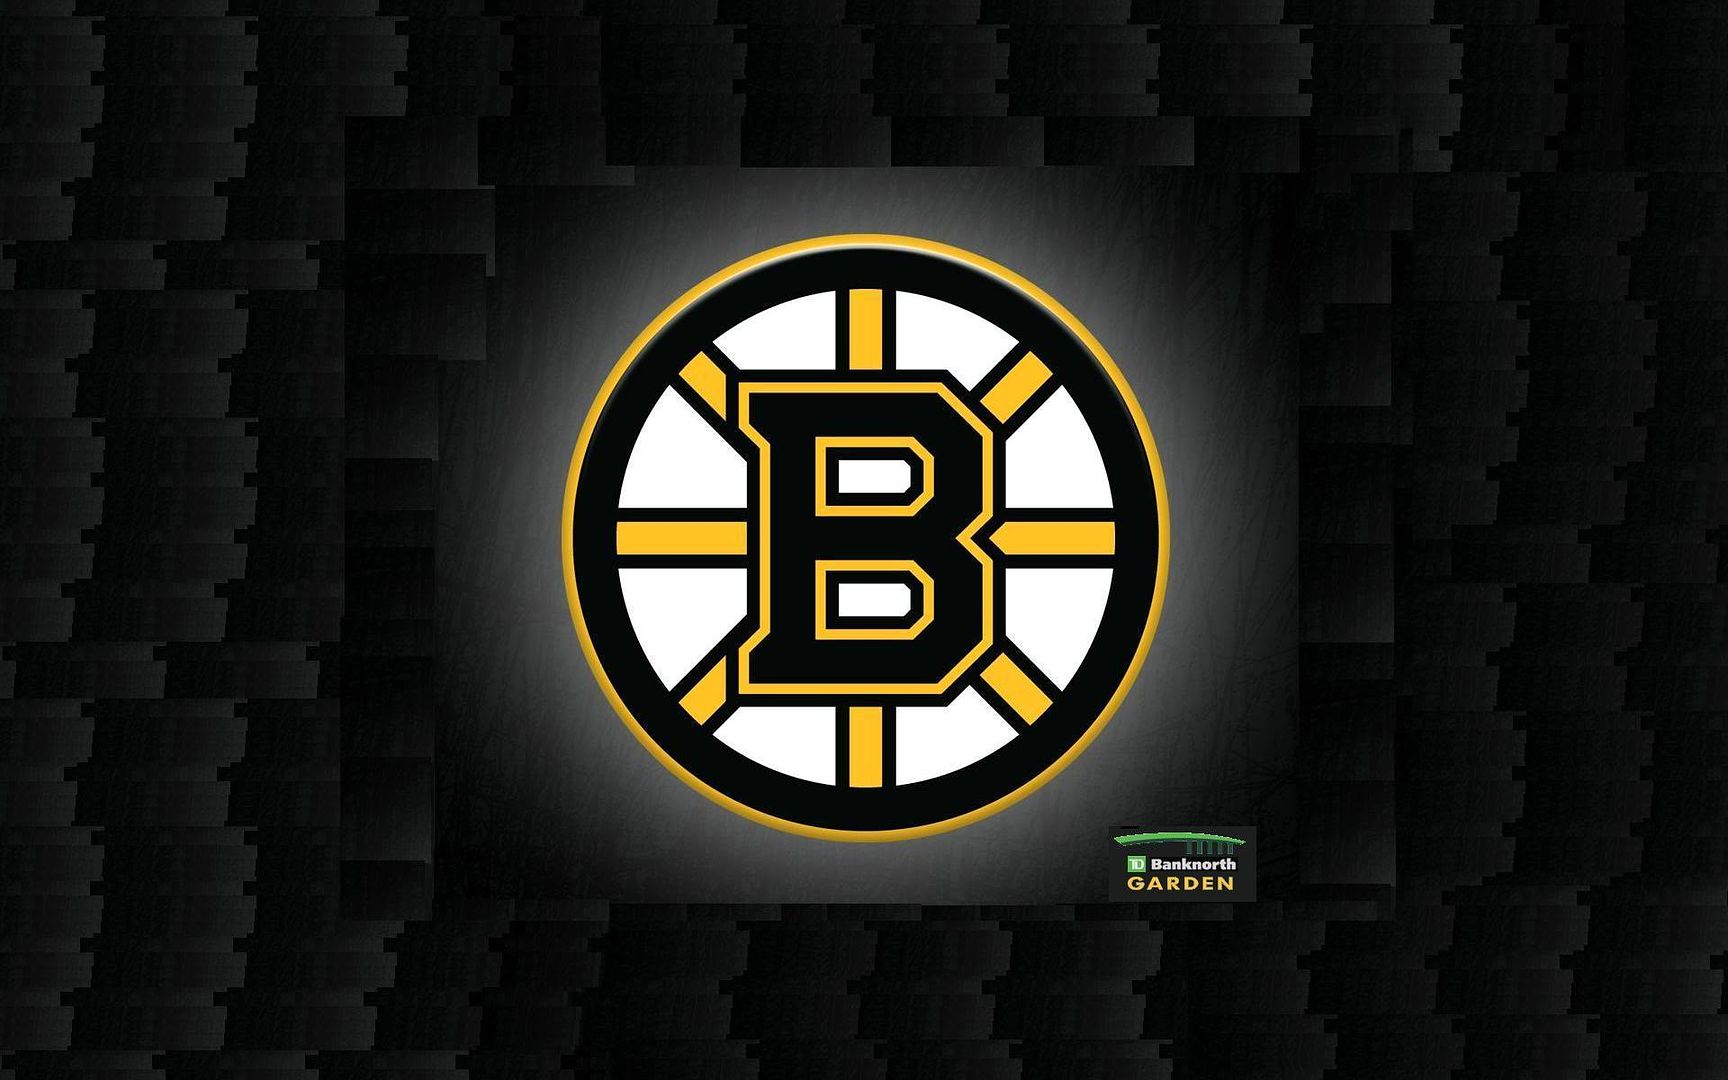 Bruins Backgrounds